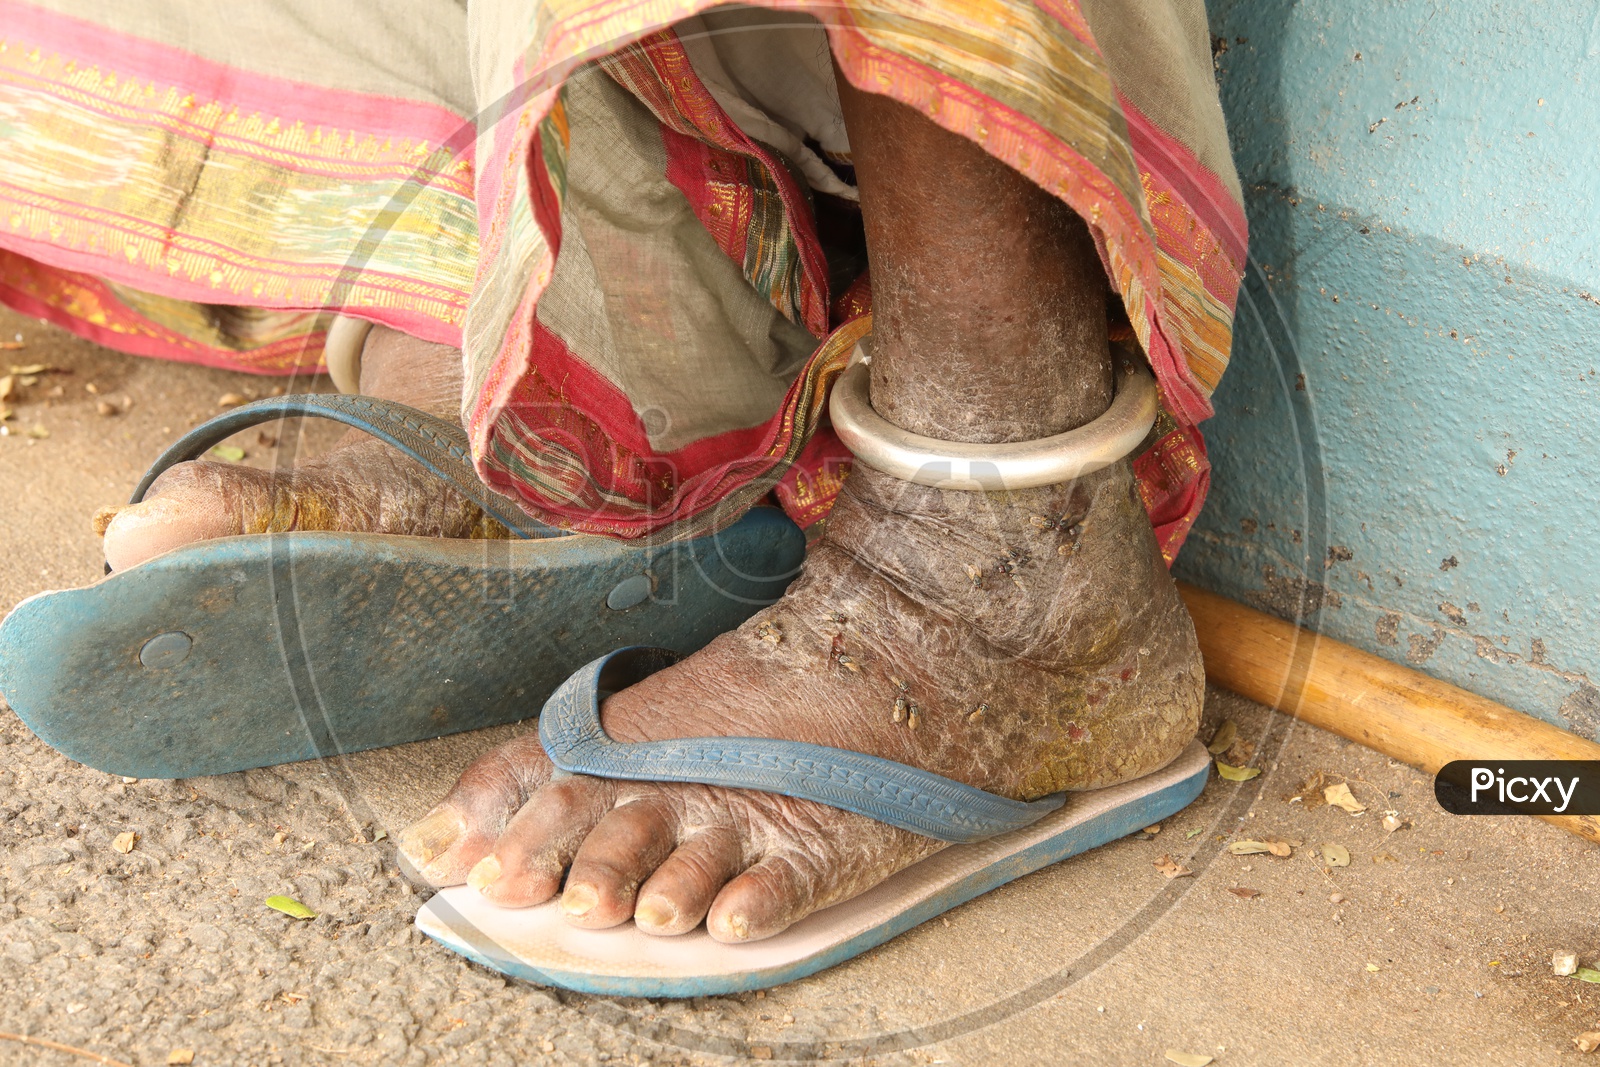 Leprosy Affected Leg Of a Beggar